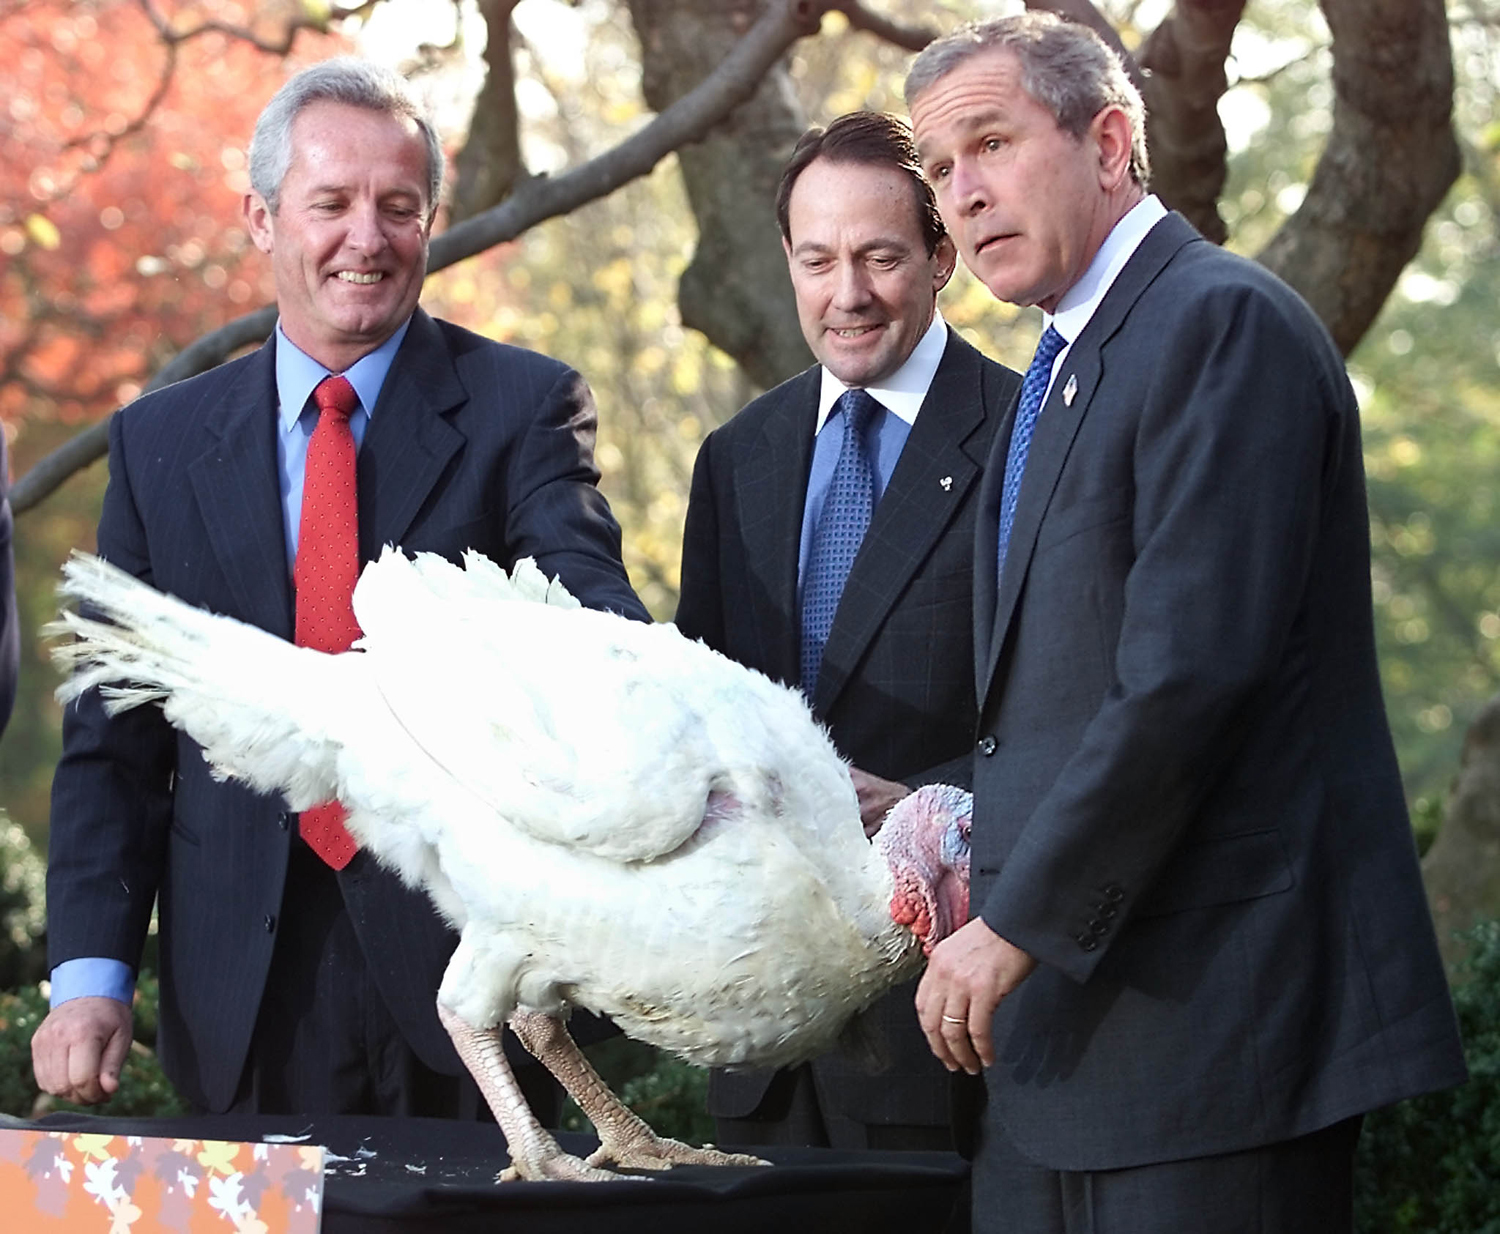 Resultado de imagen para bush thanksgiving turkey